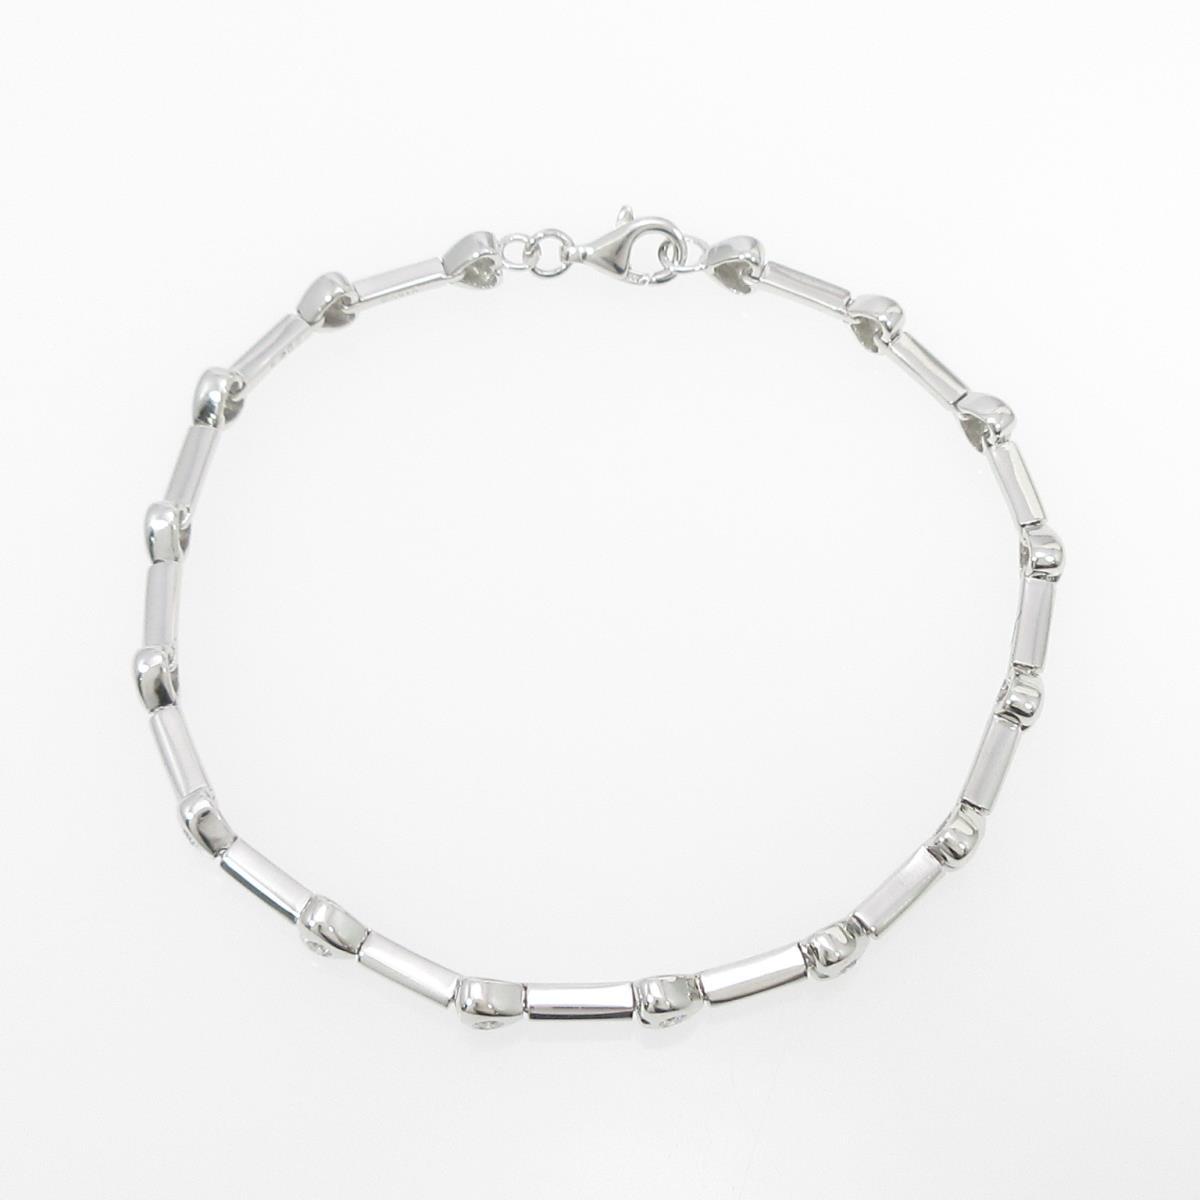 Authentic K18 White Gold Heart Diamond bracelet #270-003-068-9869 | eBay